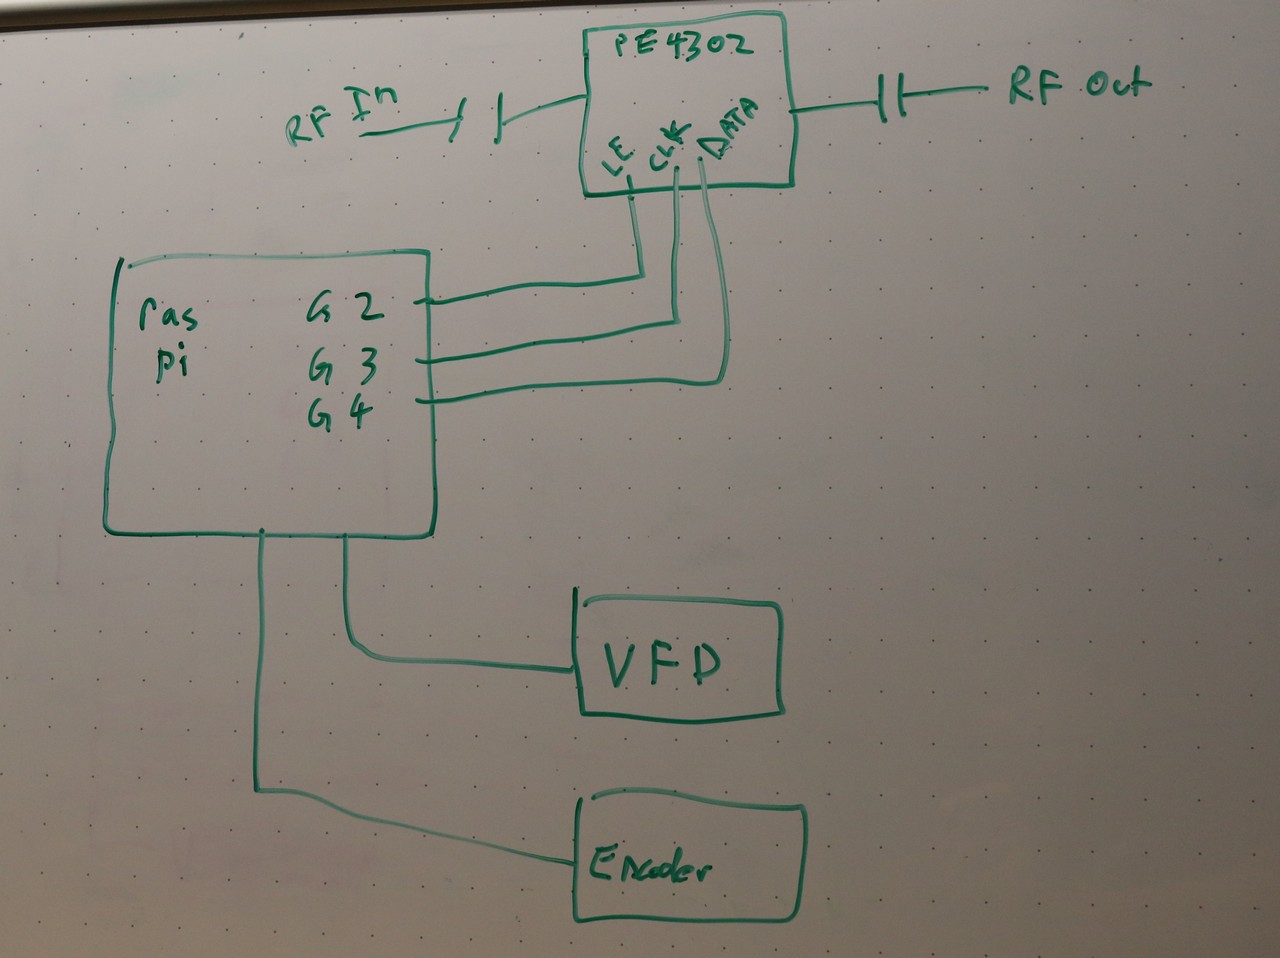 Digital stepped RF attenuator, whiteboard schematic